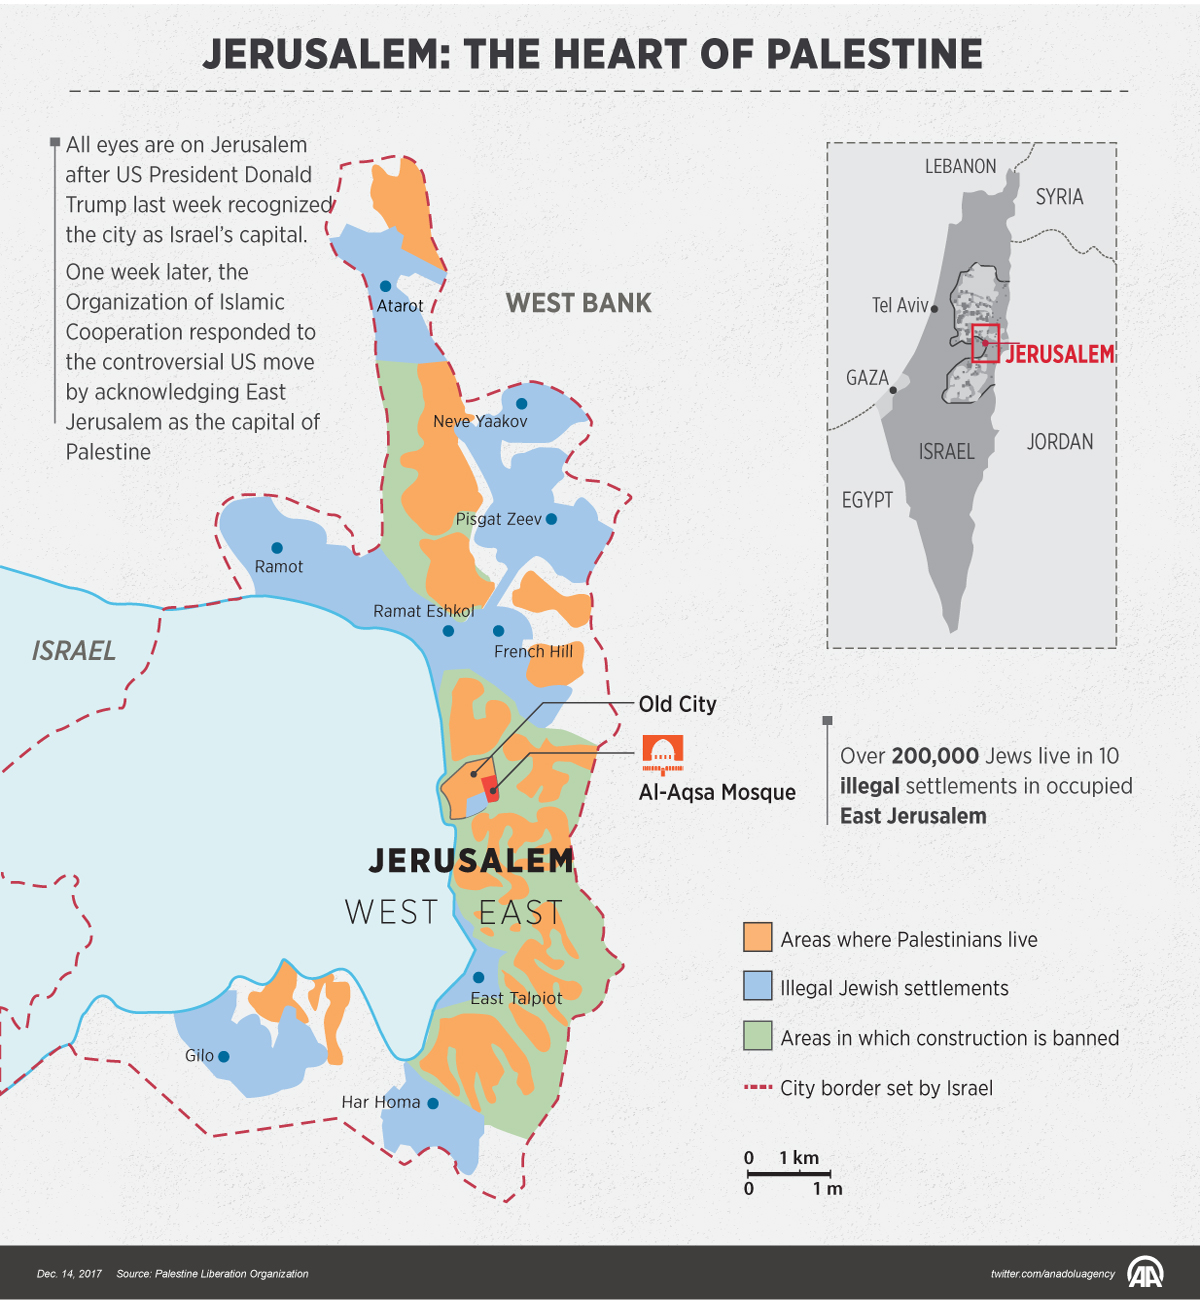 Jerusalem: The heart of Palestine